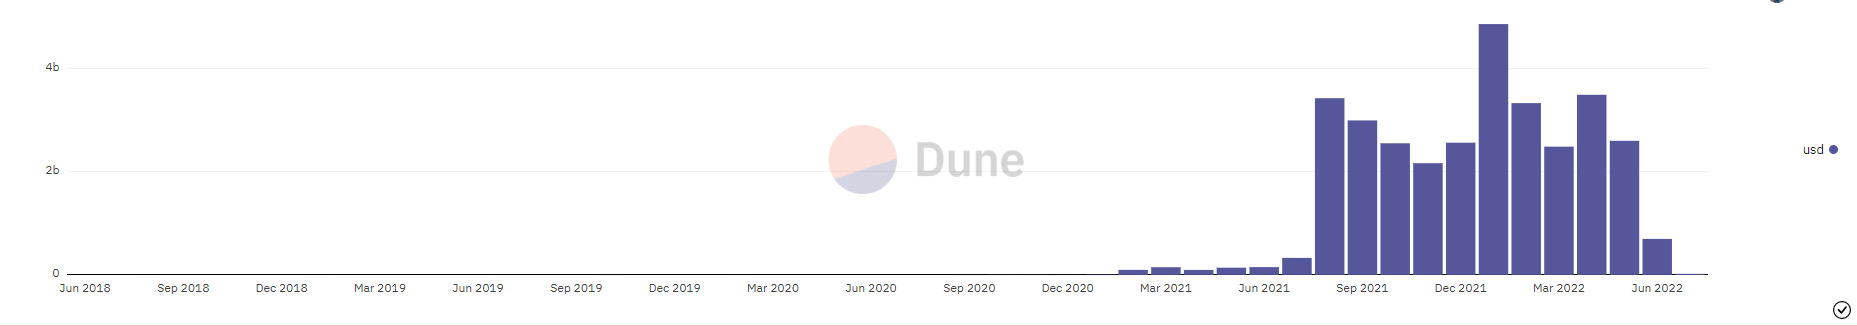 Volumul vânzărilor pe OpenSea | Dune